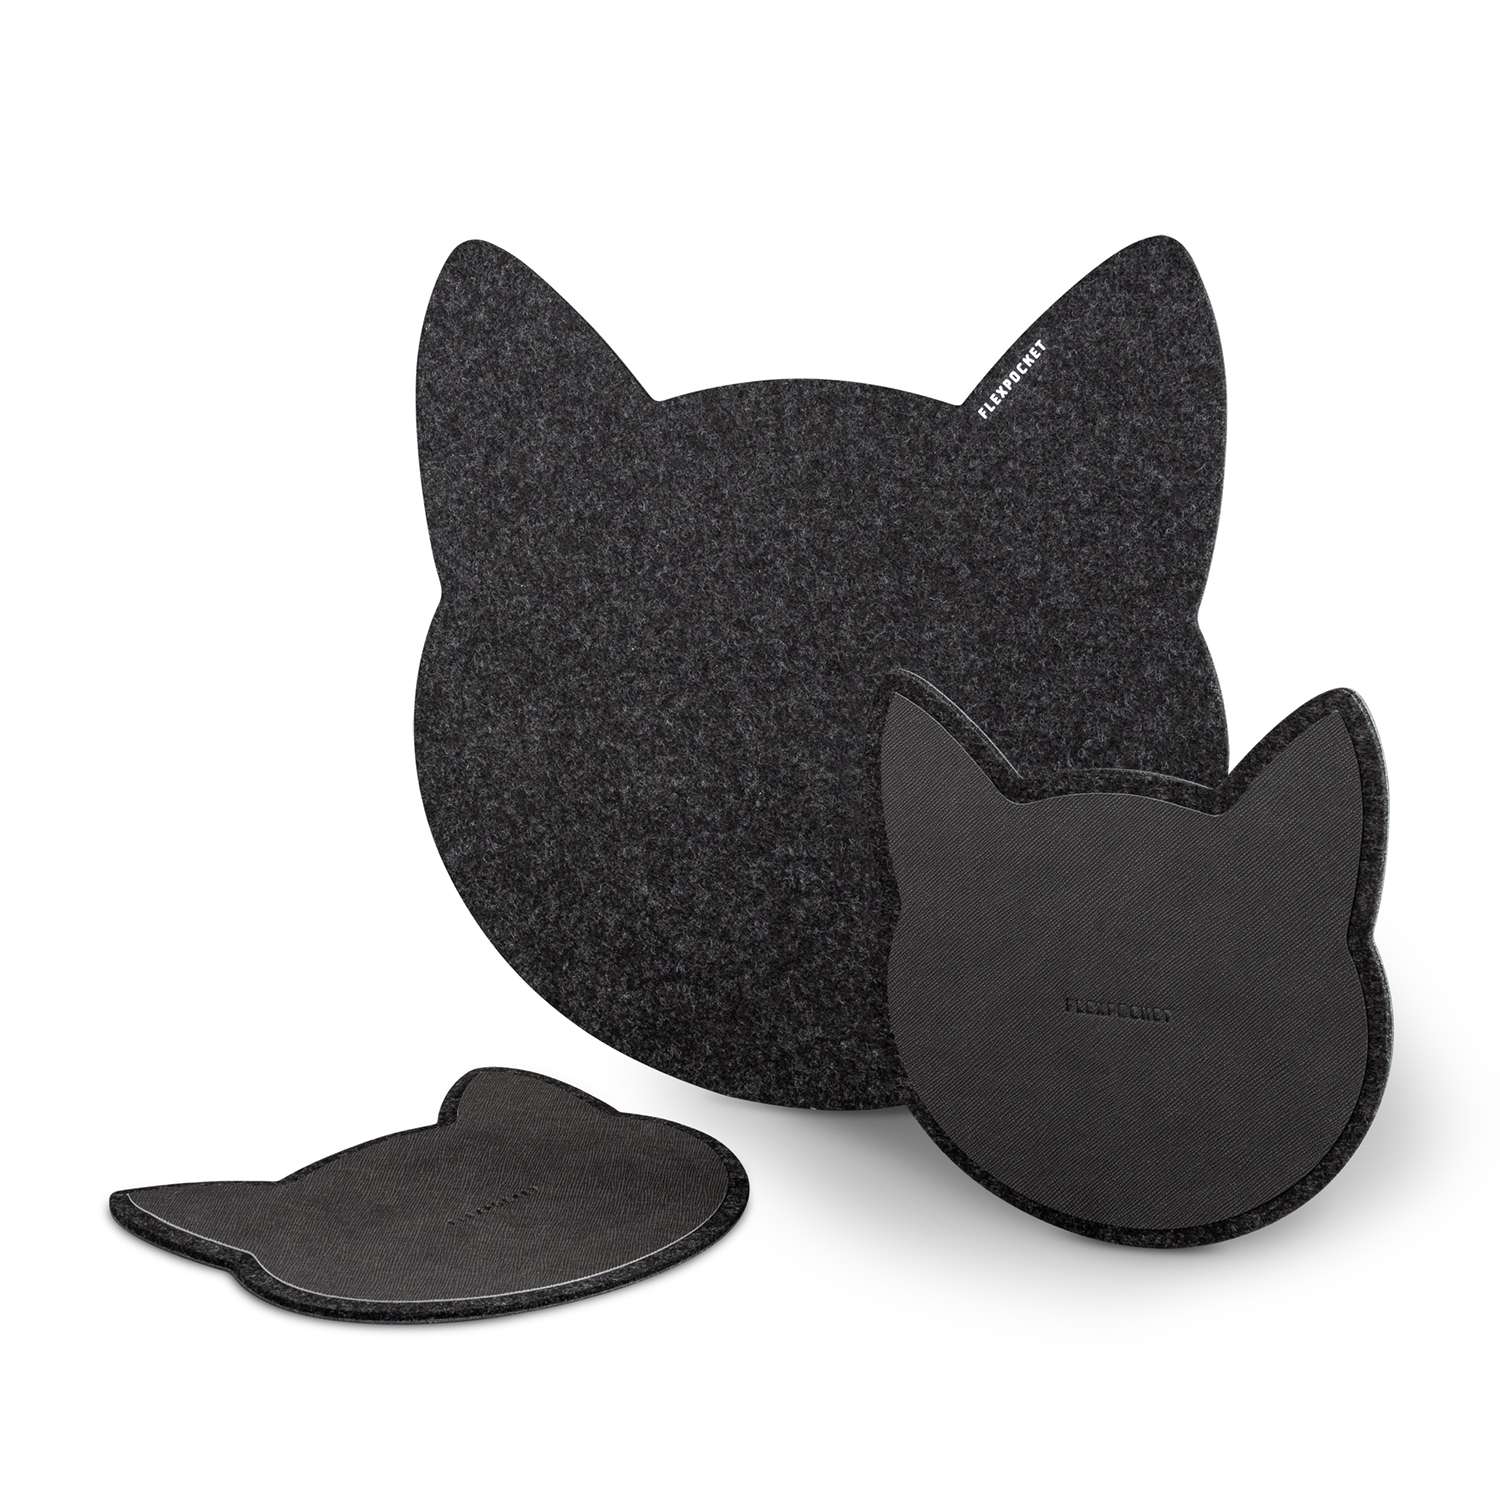 Настольный коврик Flexpocket для мыши в виде кошки + комплект с подставкой под кружку черный - фото 2